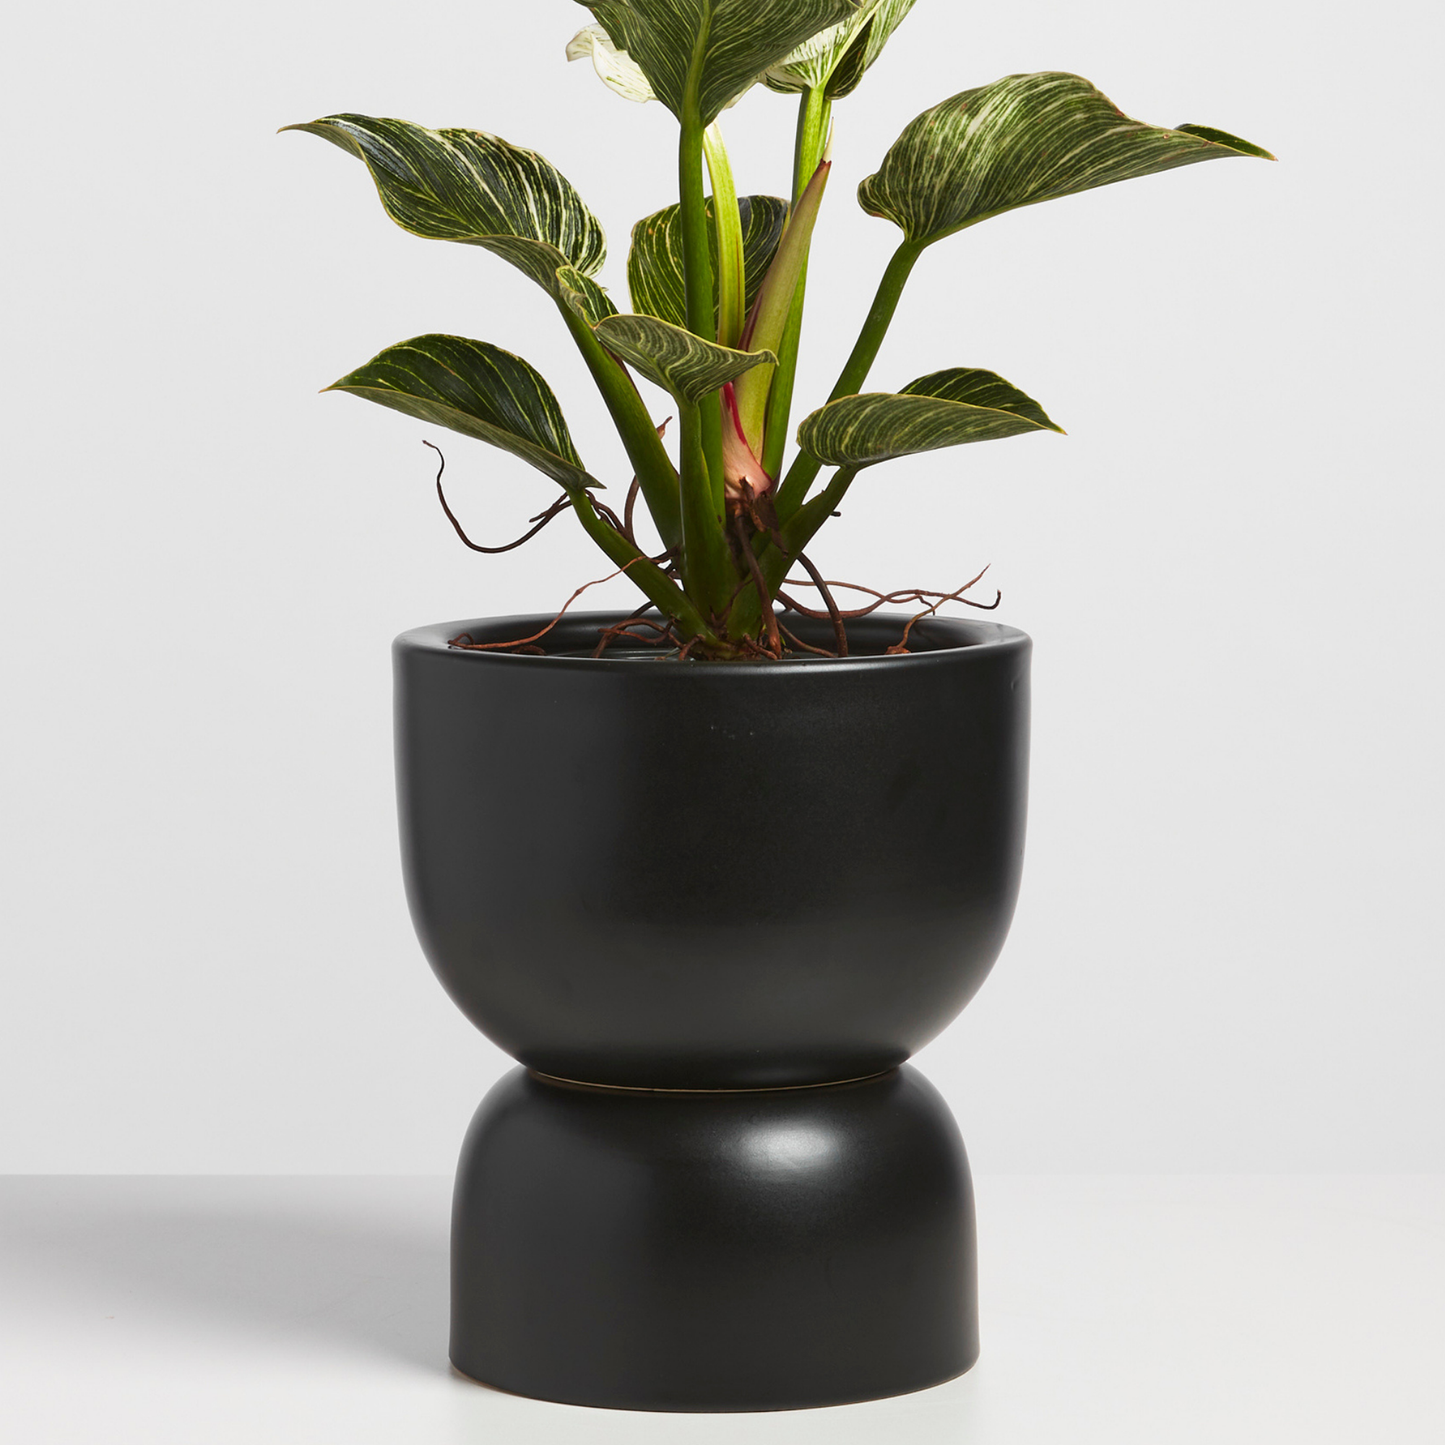 Hourglass Planter, Ceramic